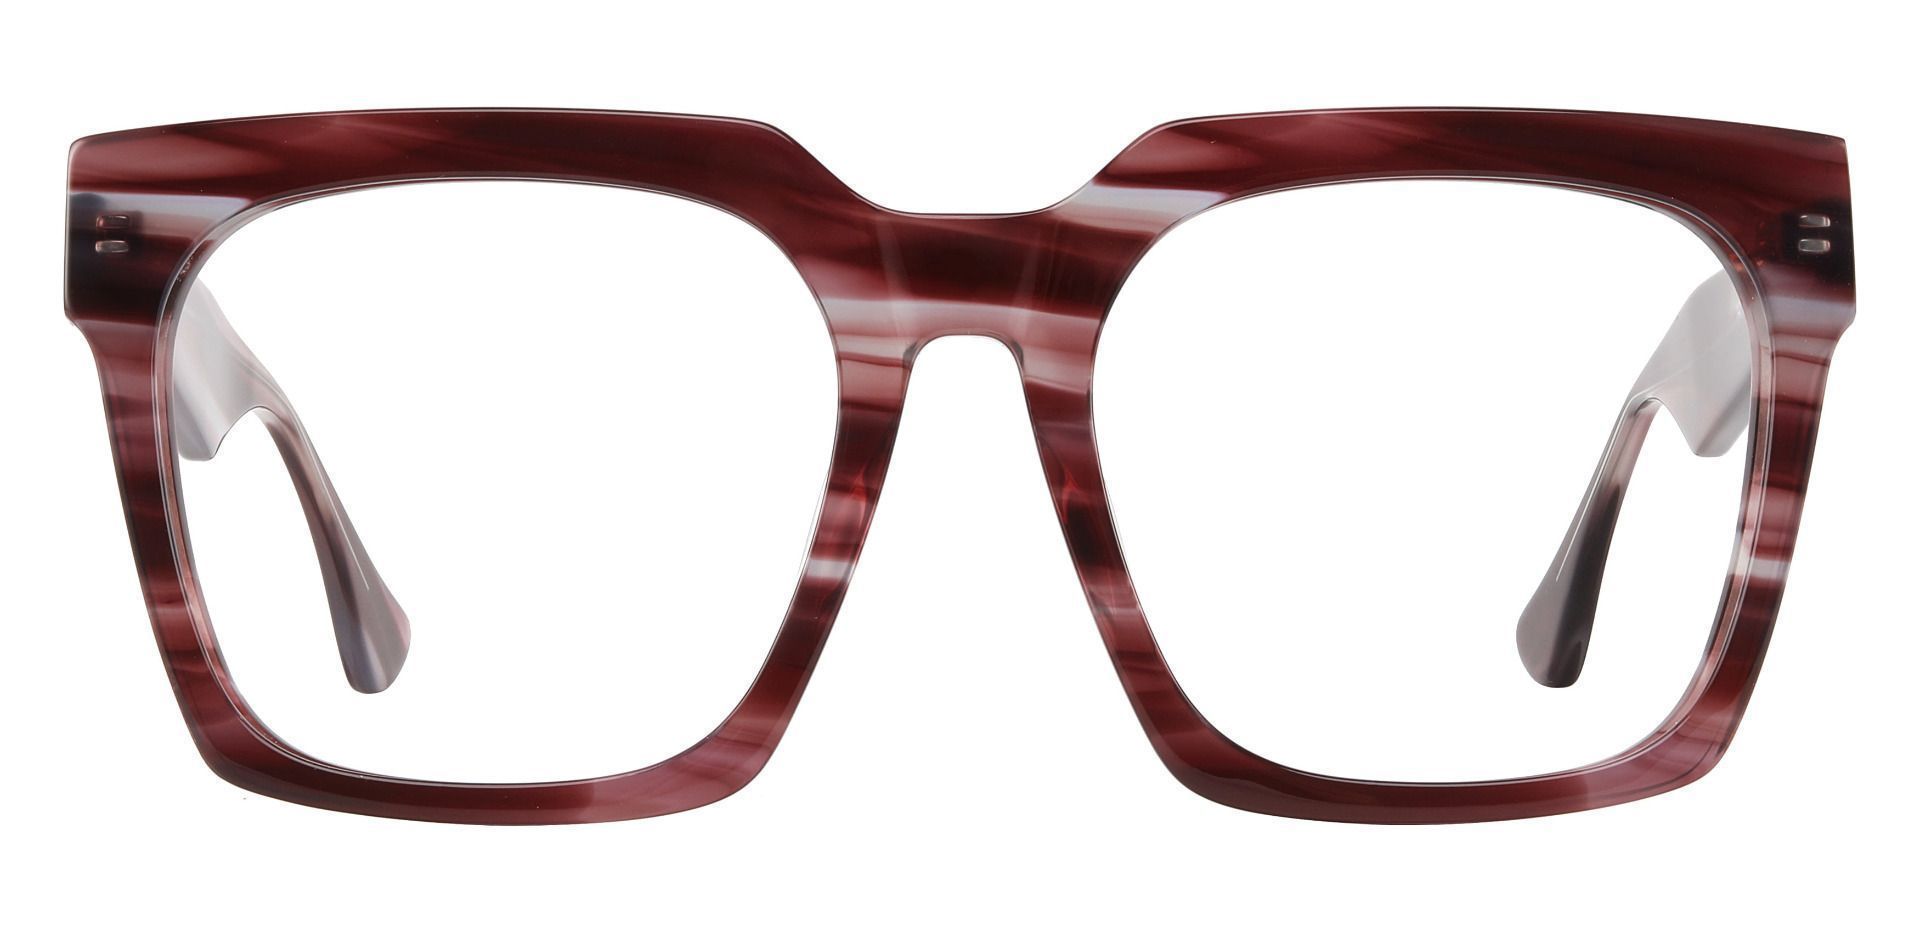 Harlan Square Prescription Glasses - Striped